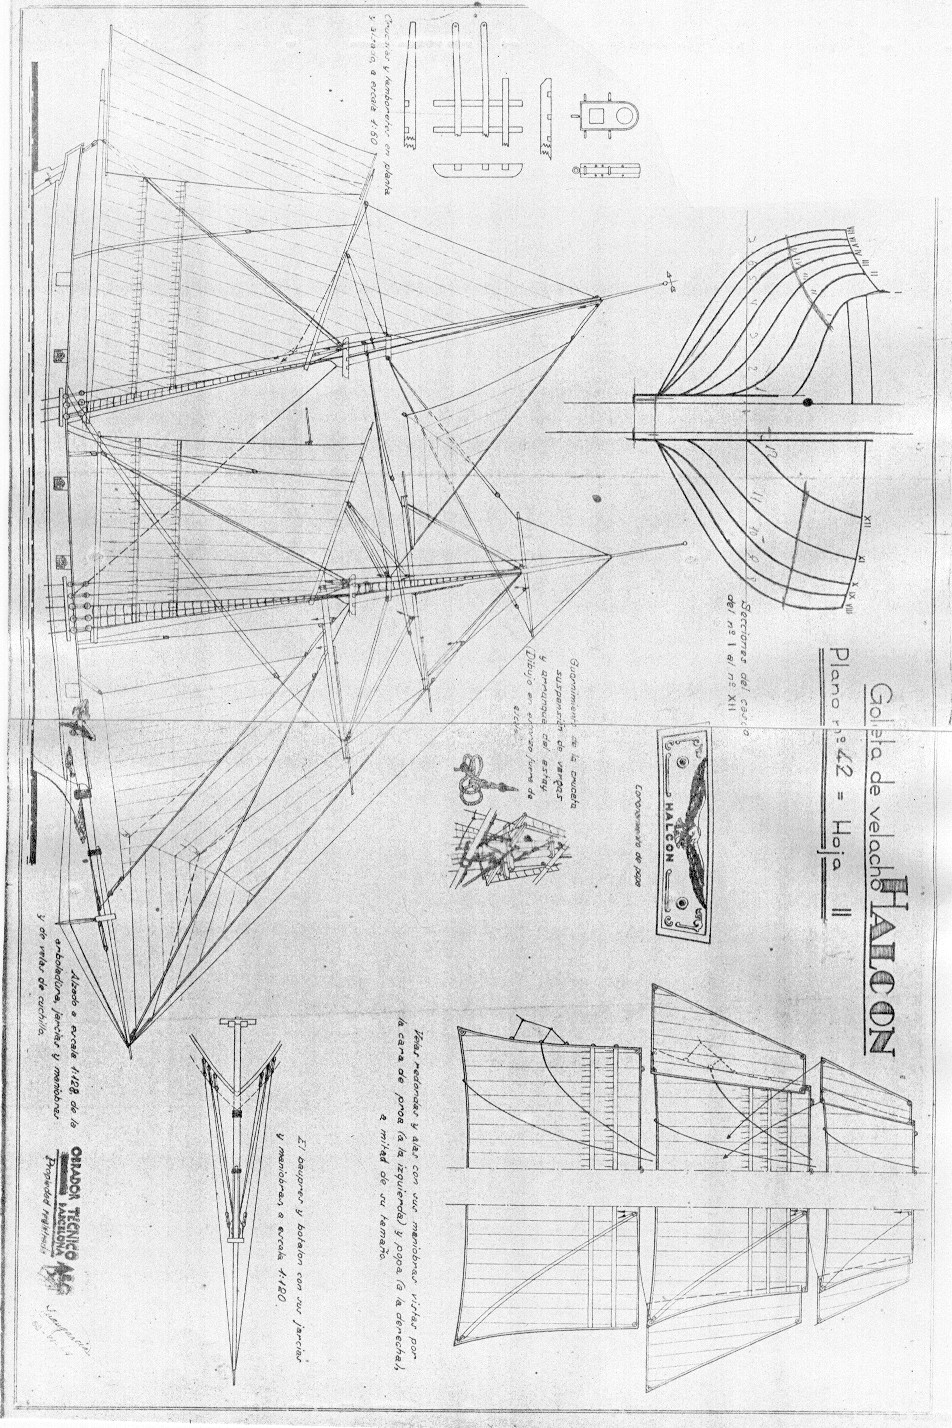 Model Ship Plans Blueprints